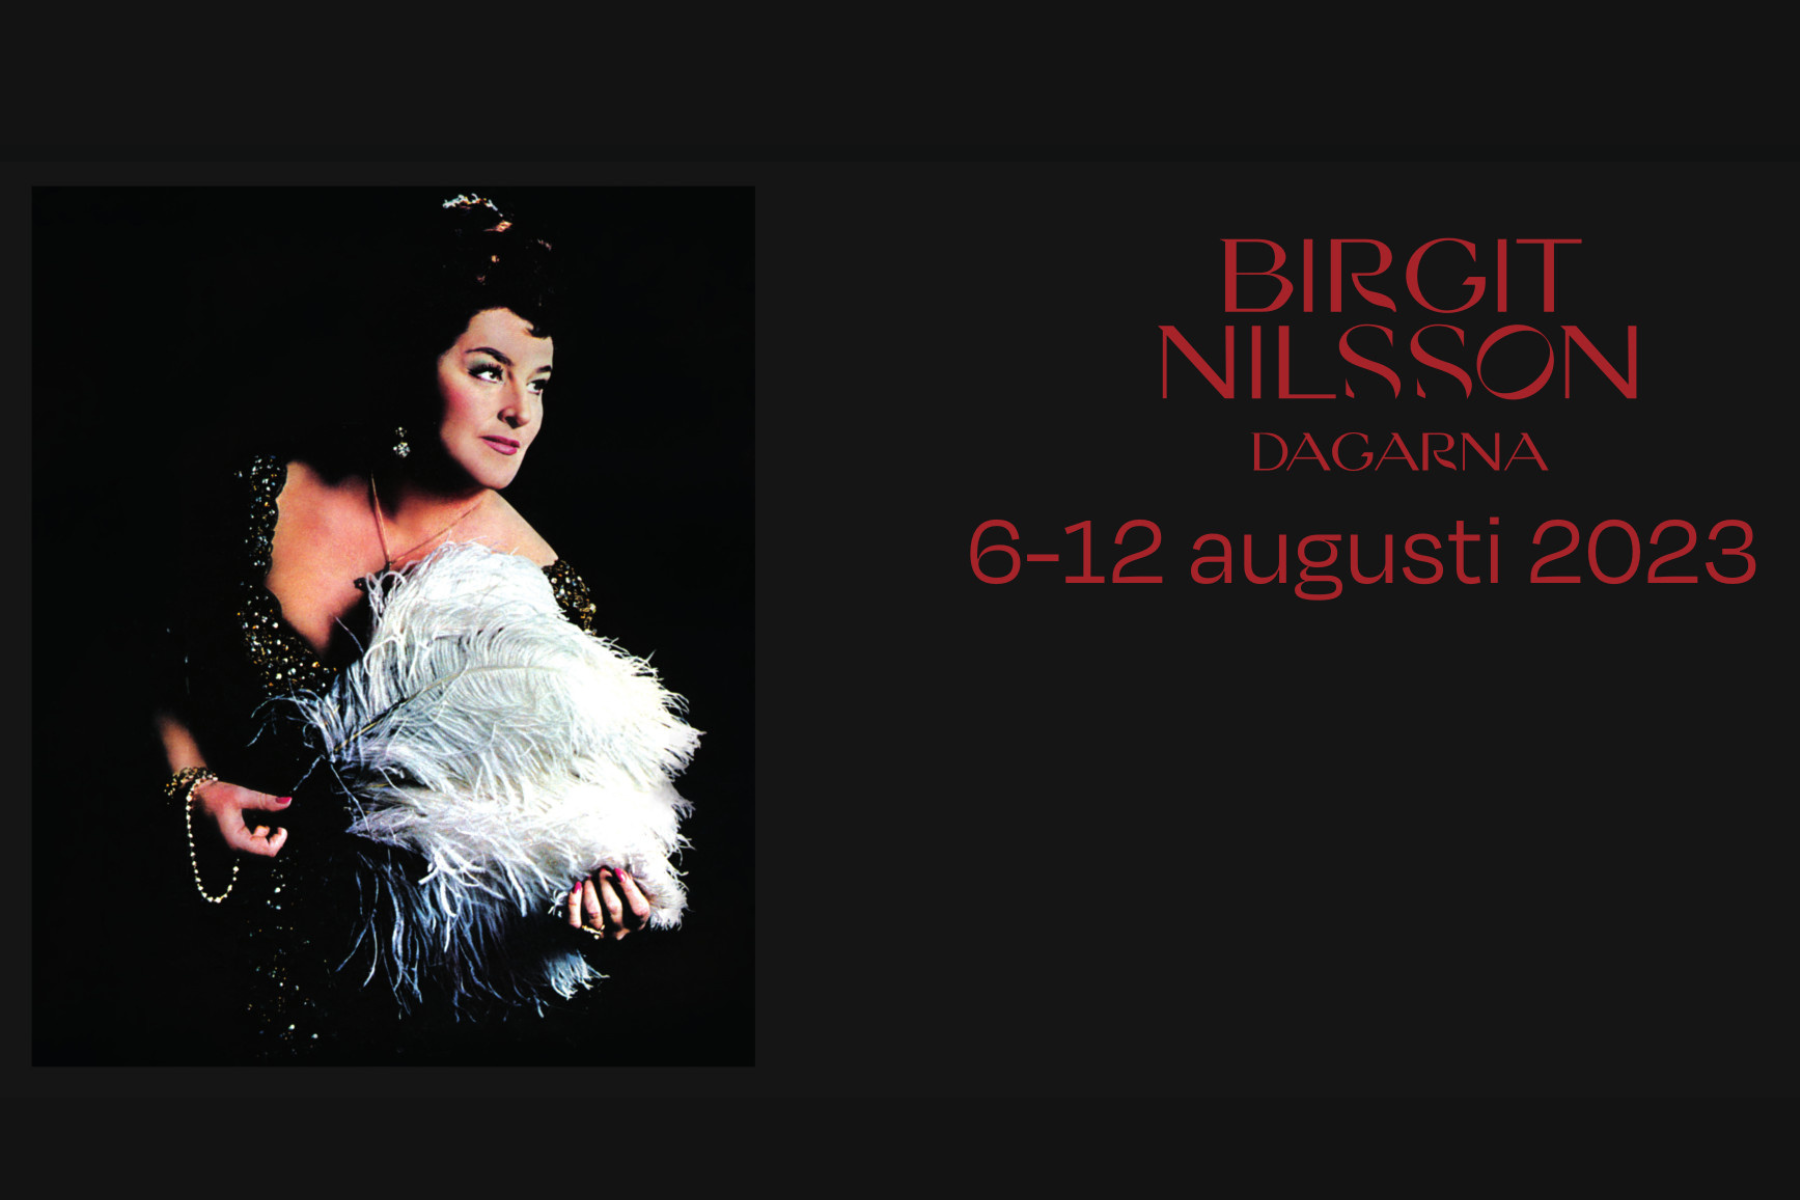 Du visar för närvarande Birgit Nilsson-dagar med opera, konserter och Master Class